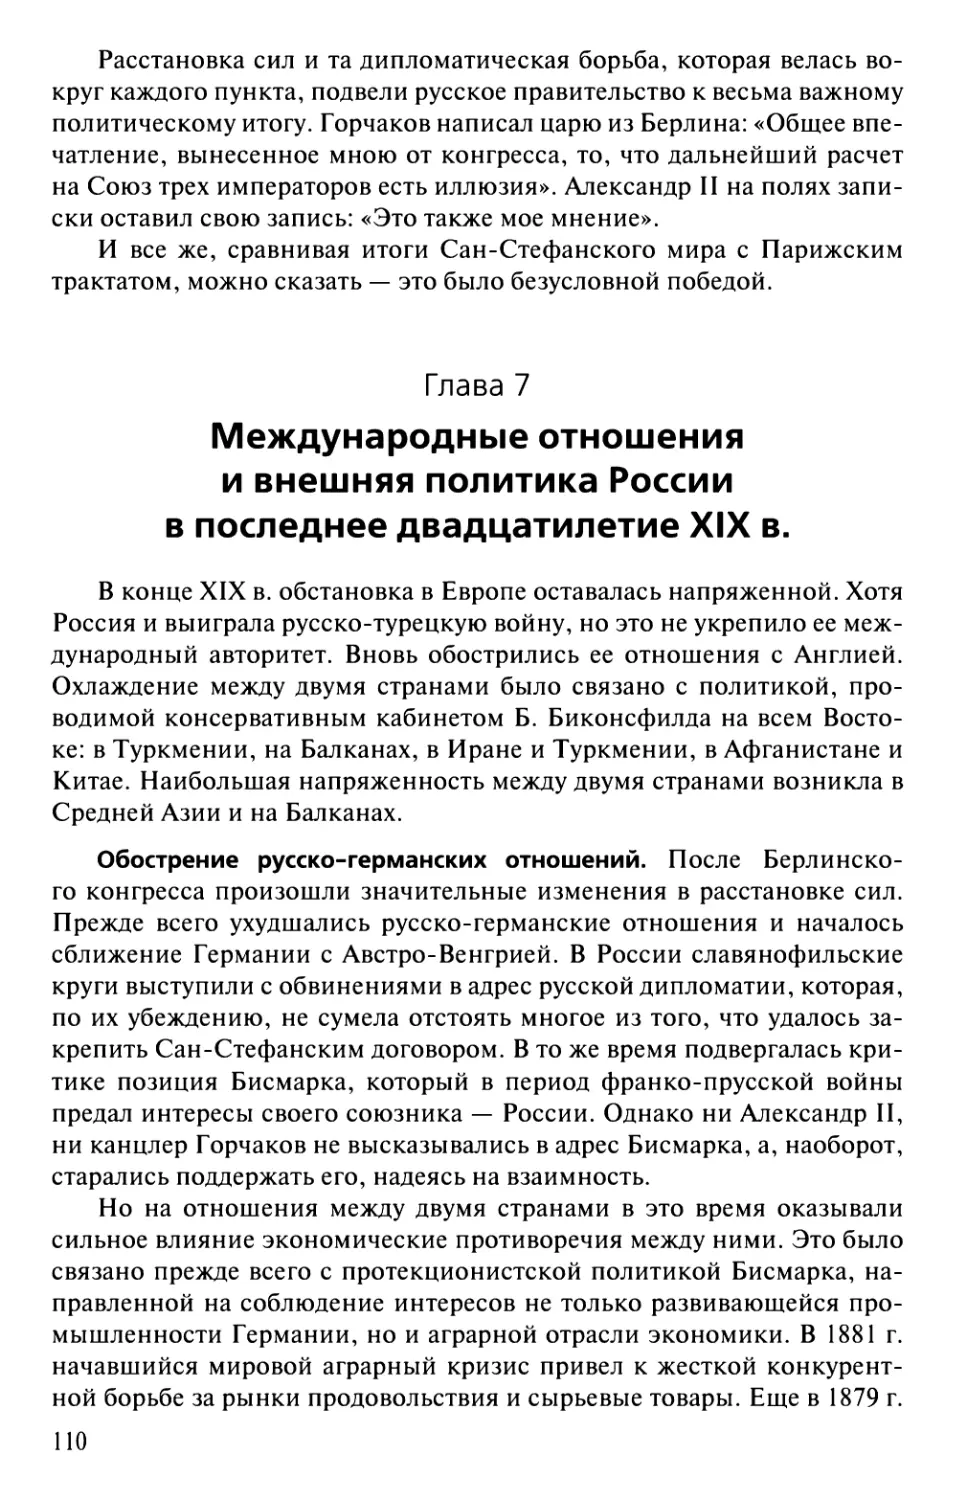 Глава 7. Международные отношения и внешняя политика России в последнее двадцатилетие XIX в